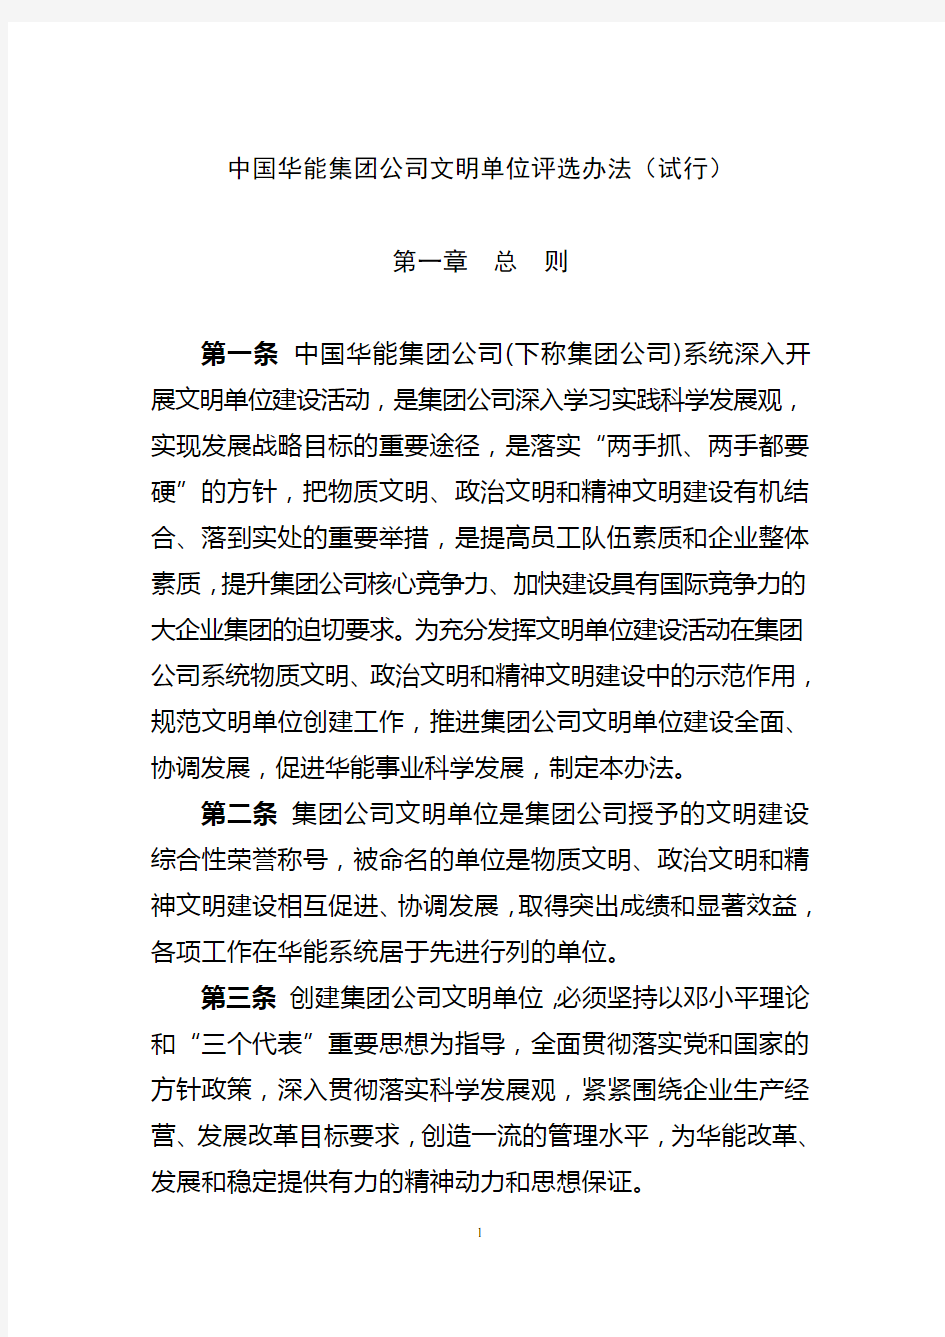 中国华能集团公司文明单位评选办法(试行)